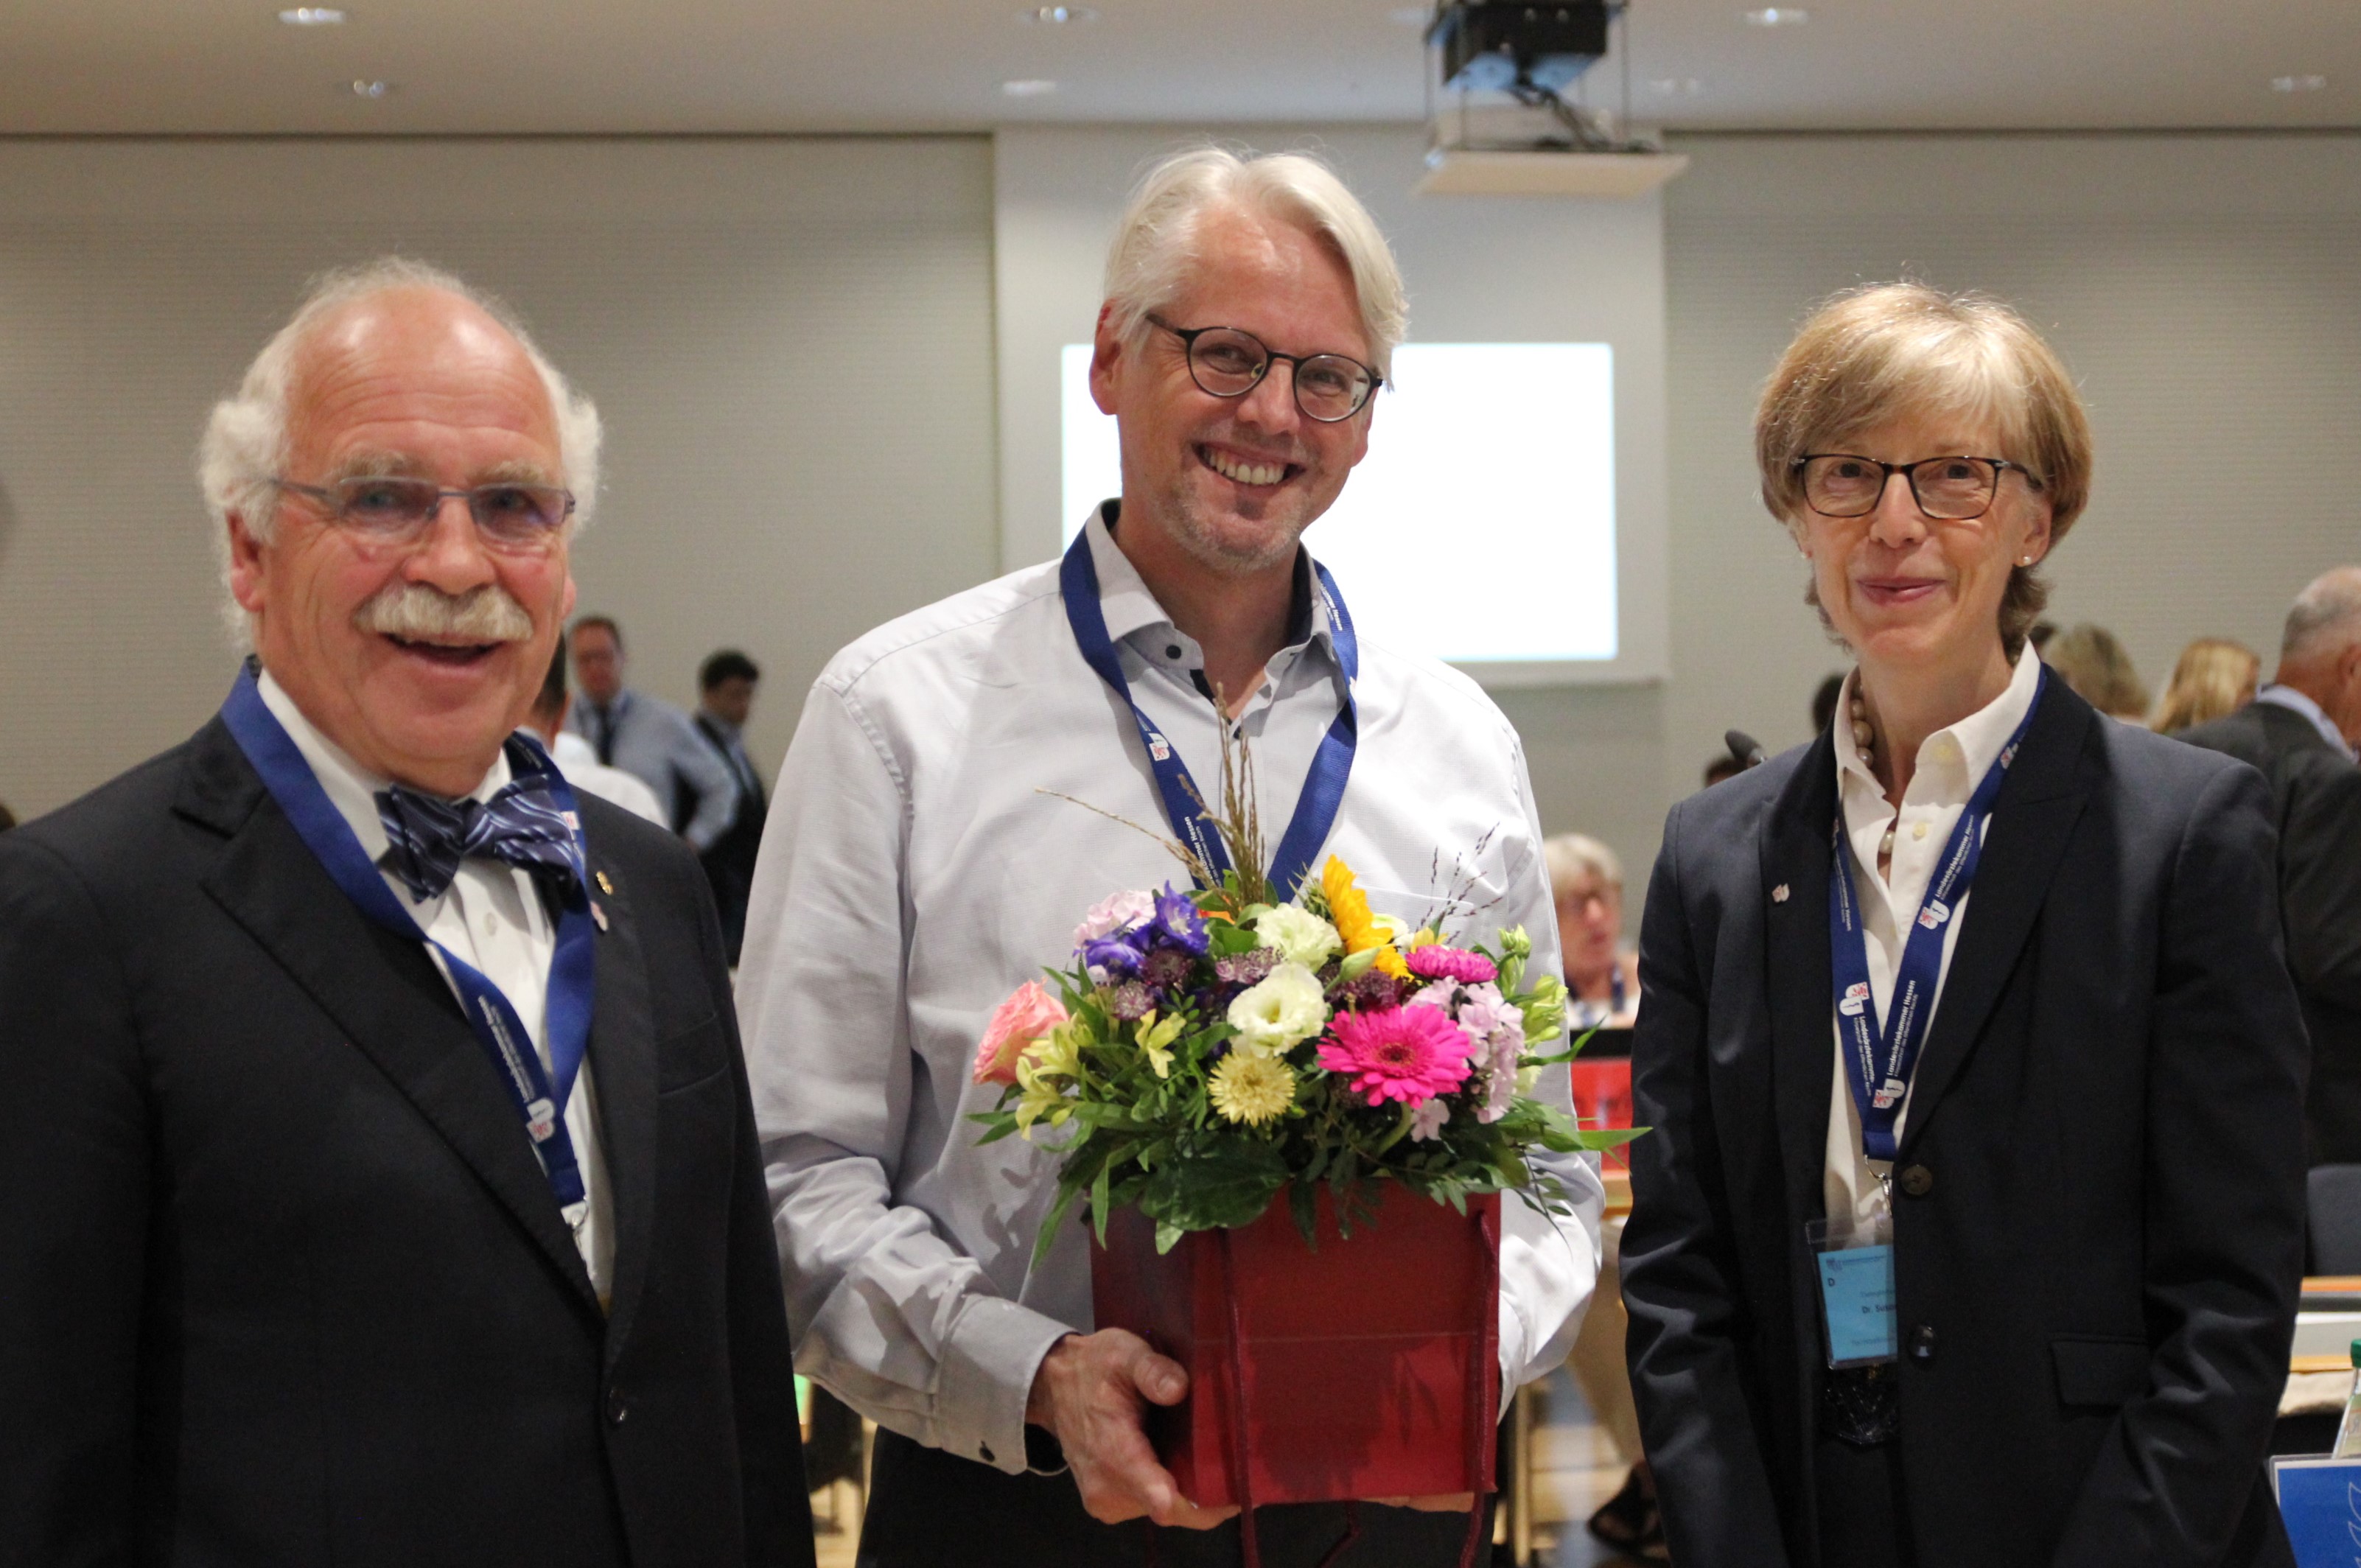 Der neue Vize-Präsident Dr. Christian Schwark (Mitte) mit dem Vorstand des Wahlausschusses: Dr. Susan Trittmacher und Dr. Gottfried von Knoblauch zu Hatzbach.